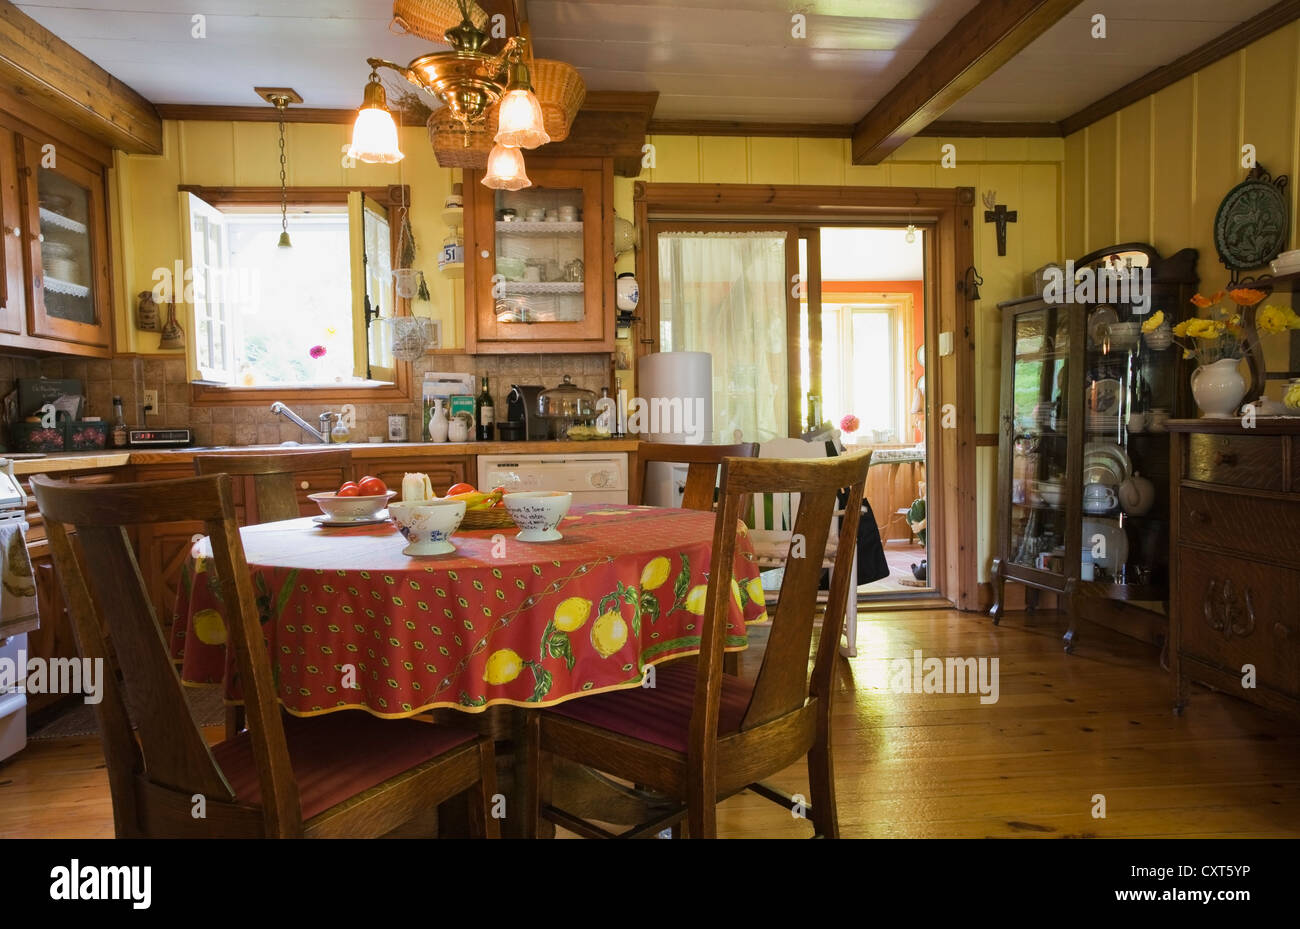 Esstisch, Stühle und Möbel in der Küche ein altes Canadiana Landhausstil-Holz Abstellgleis Wohn-Haus, ca. Stockfoto